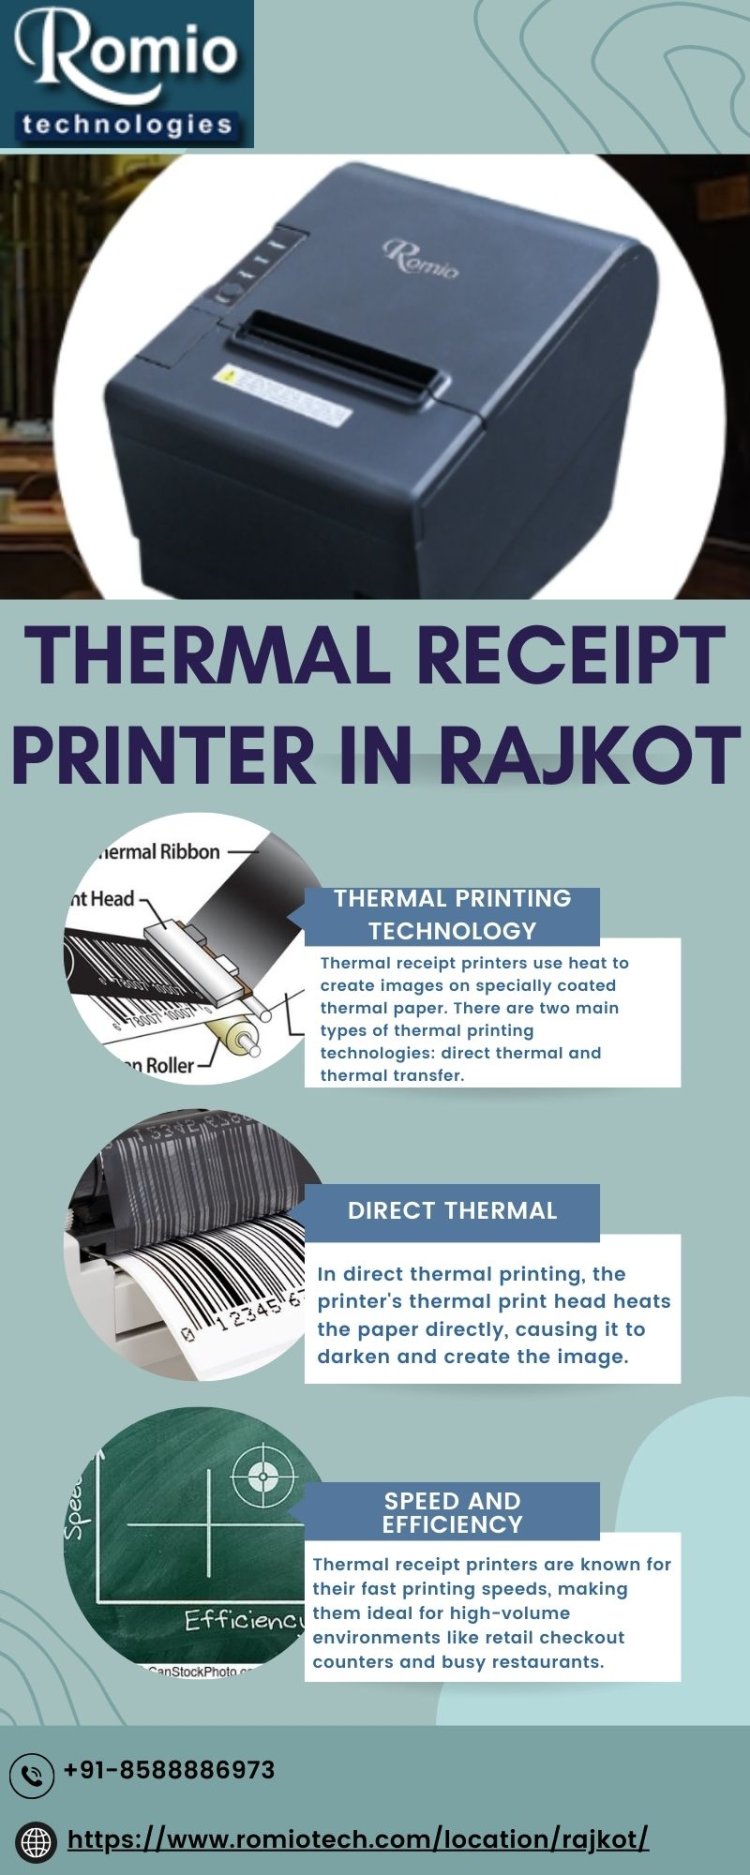 Thermal Receipt Printer in Rajkot